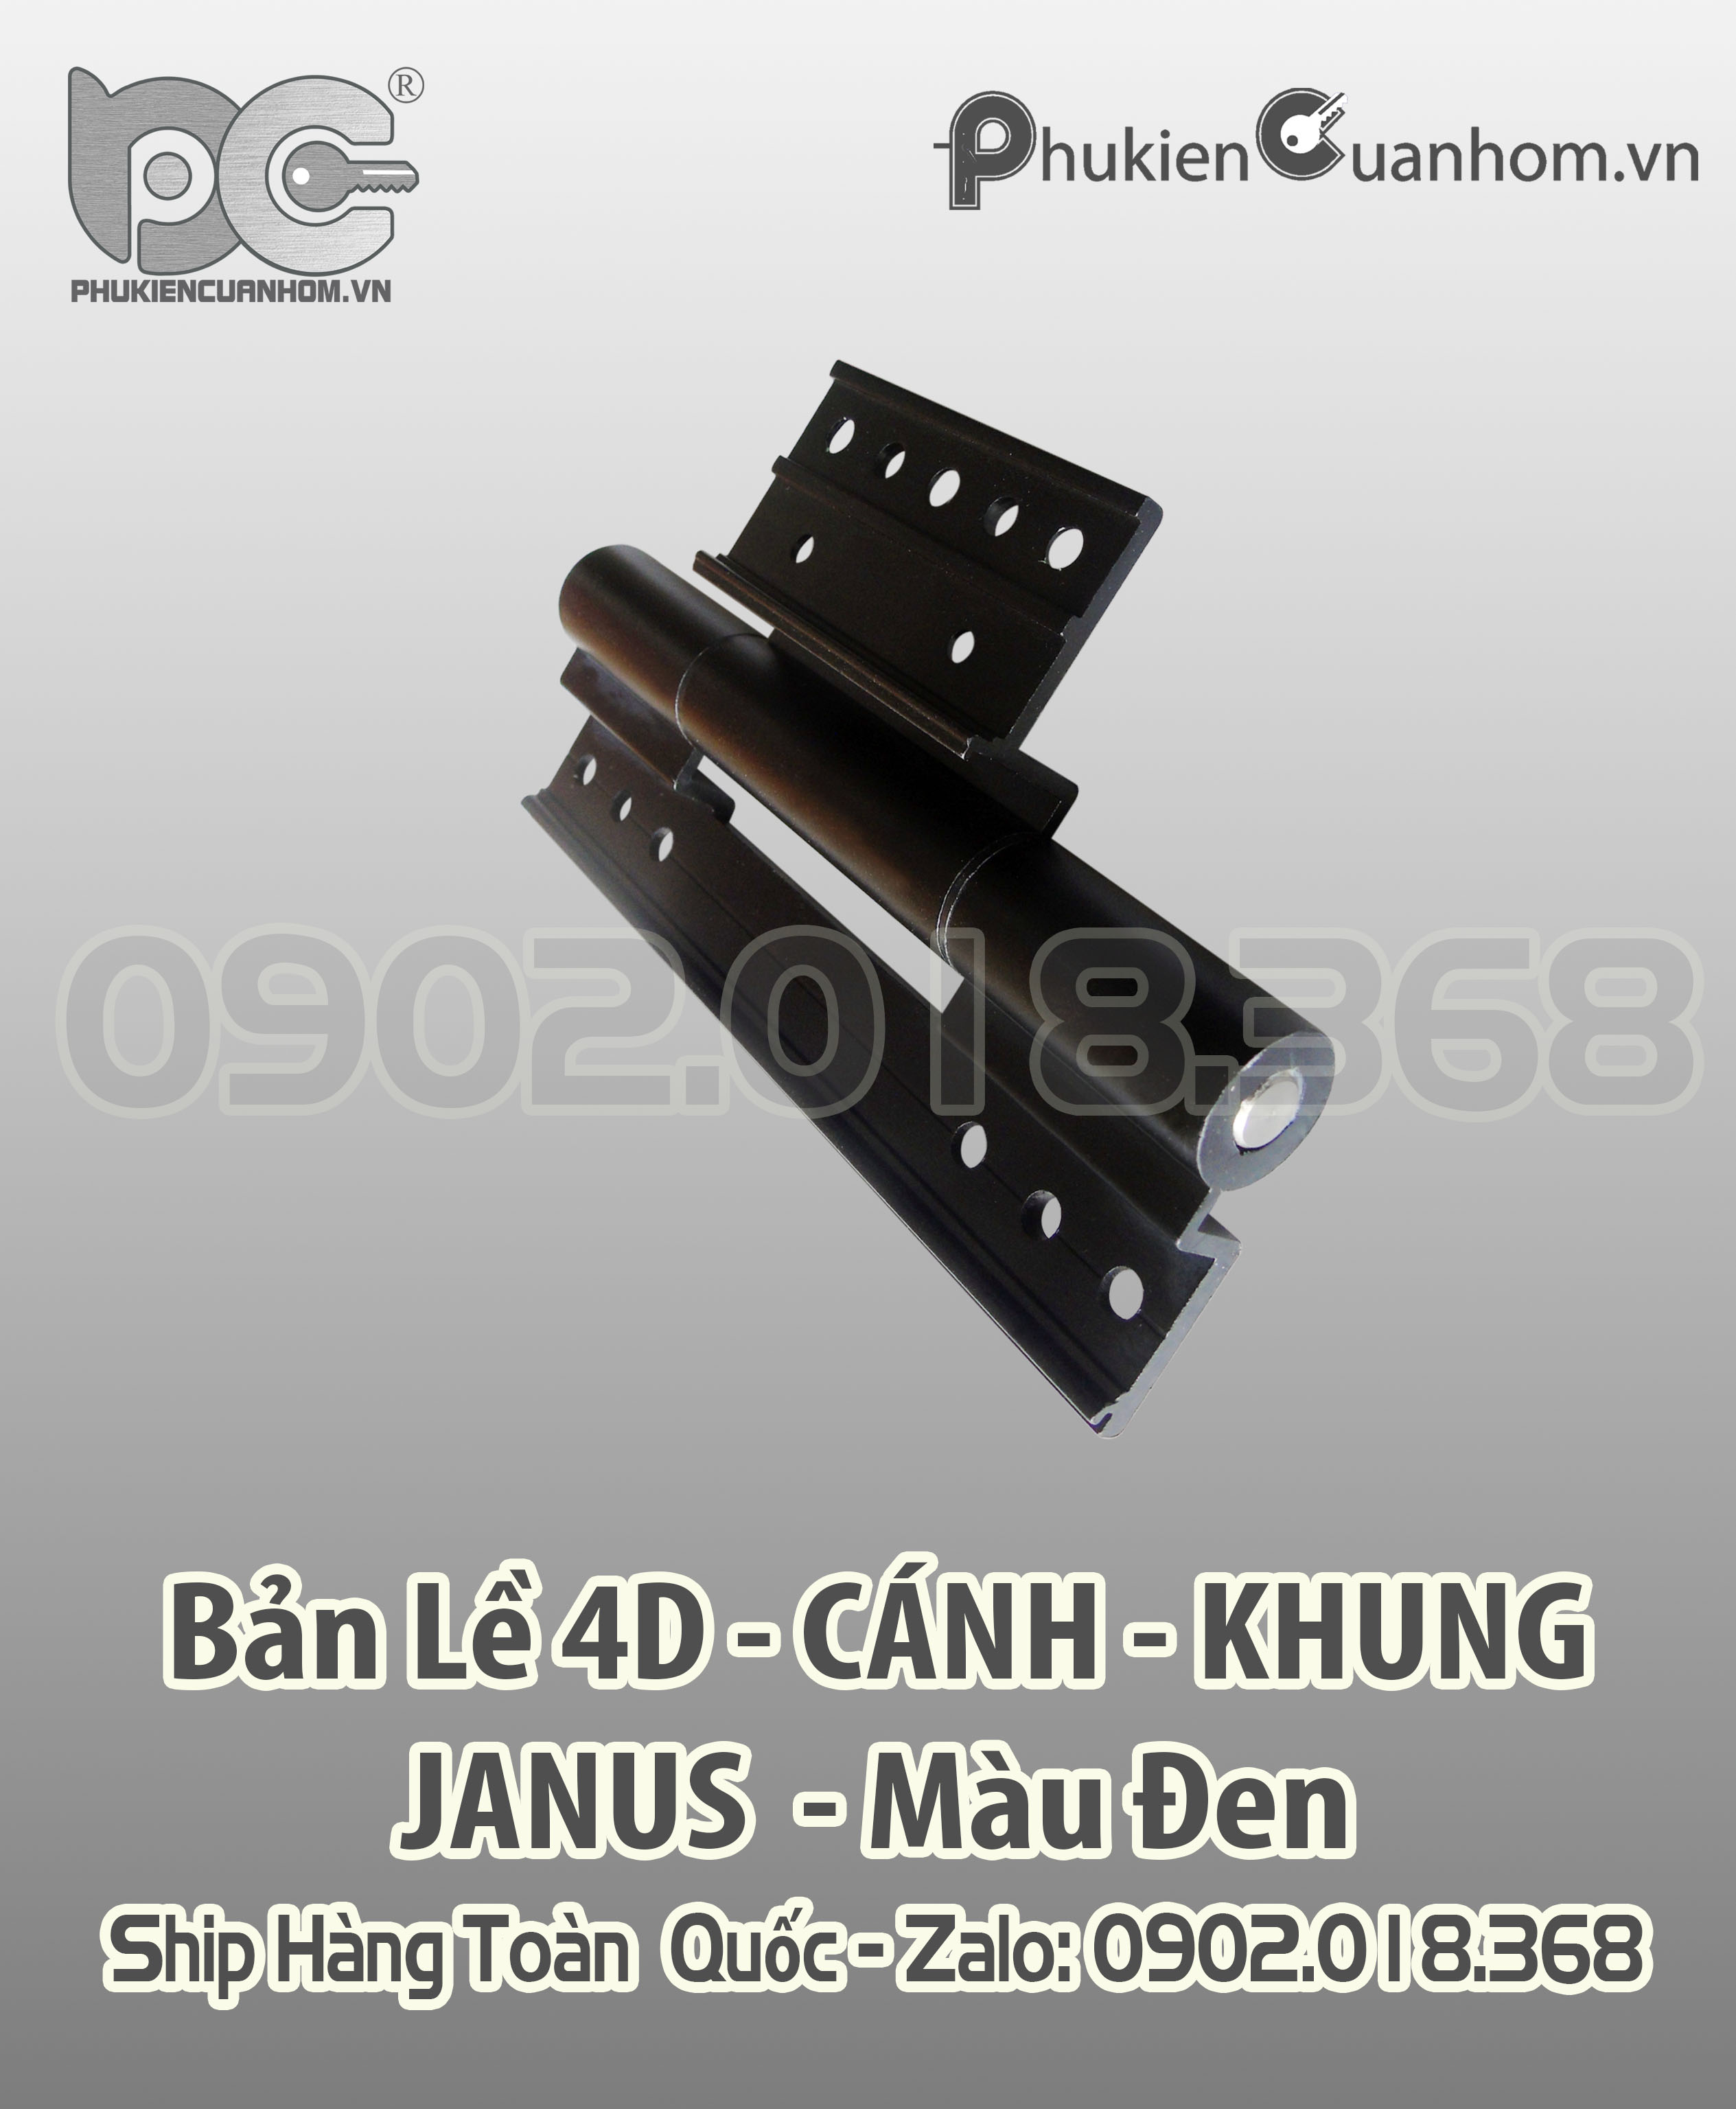 Bản lề 4D cánh khung cao cấp Xingfa 55 hiệu Janus màu đen